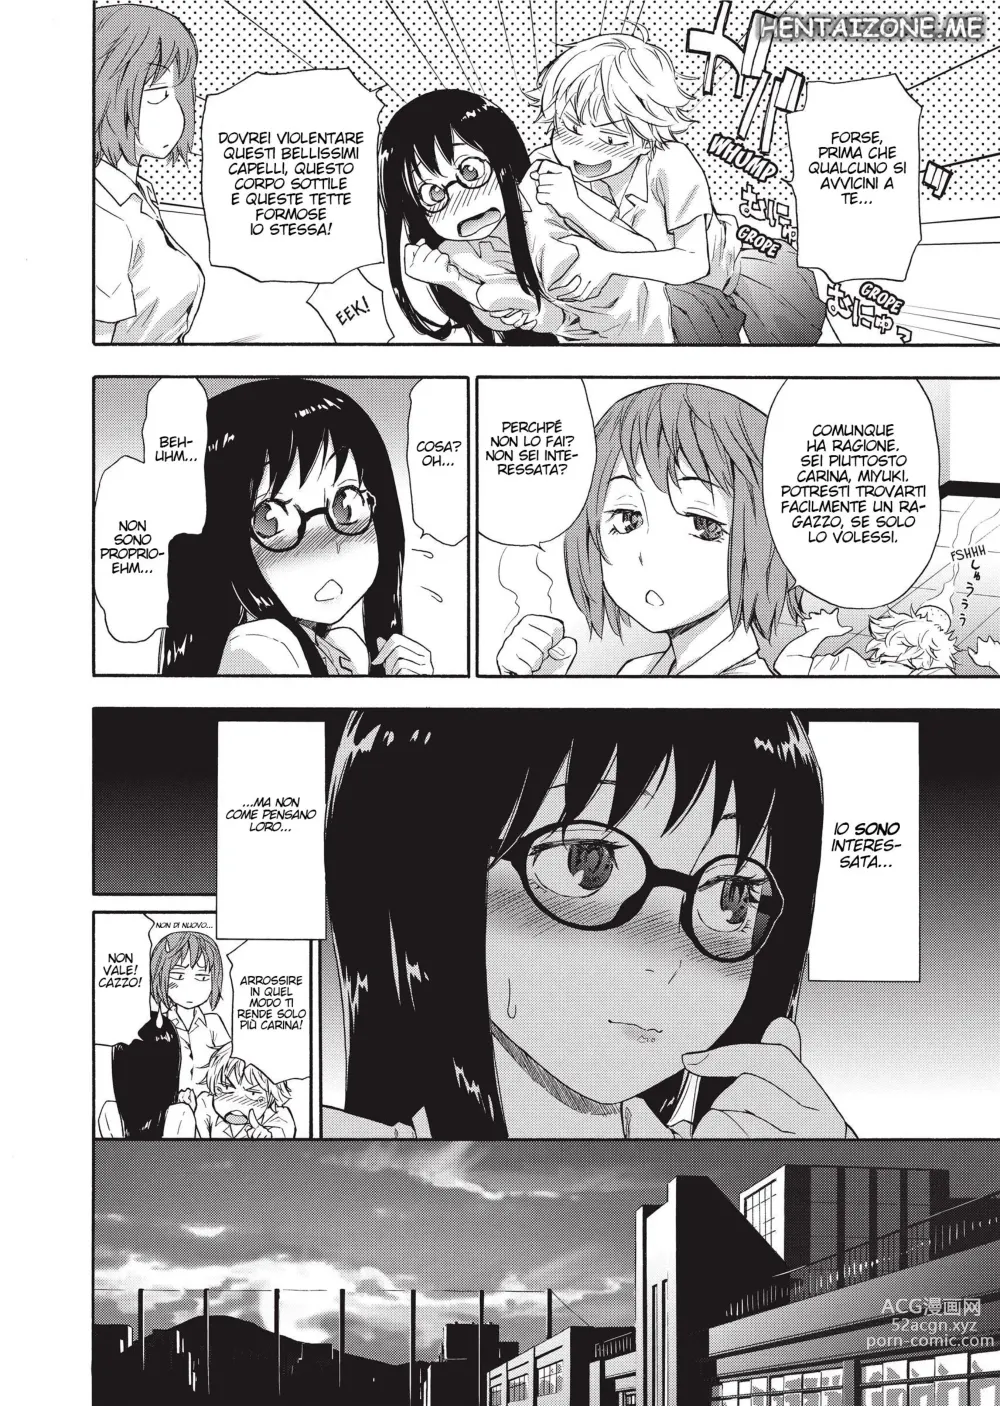 Page 3 of manga Giocare con il Fuoco (decensored)